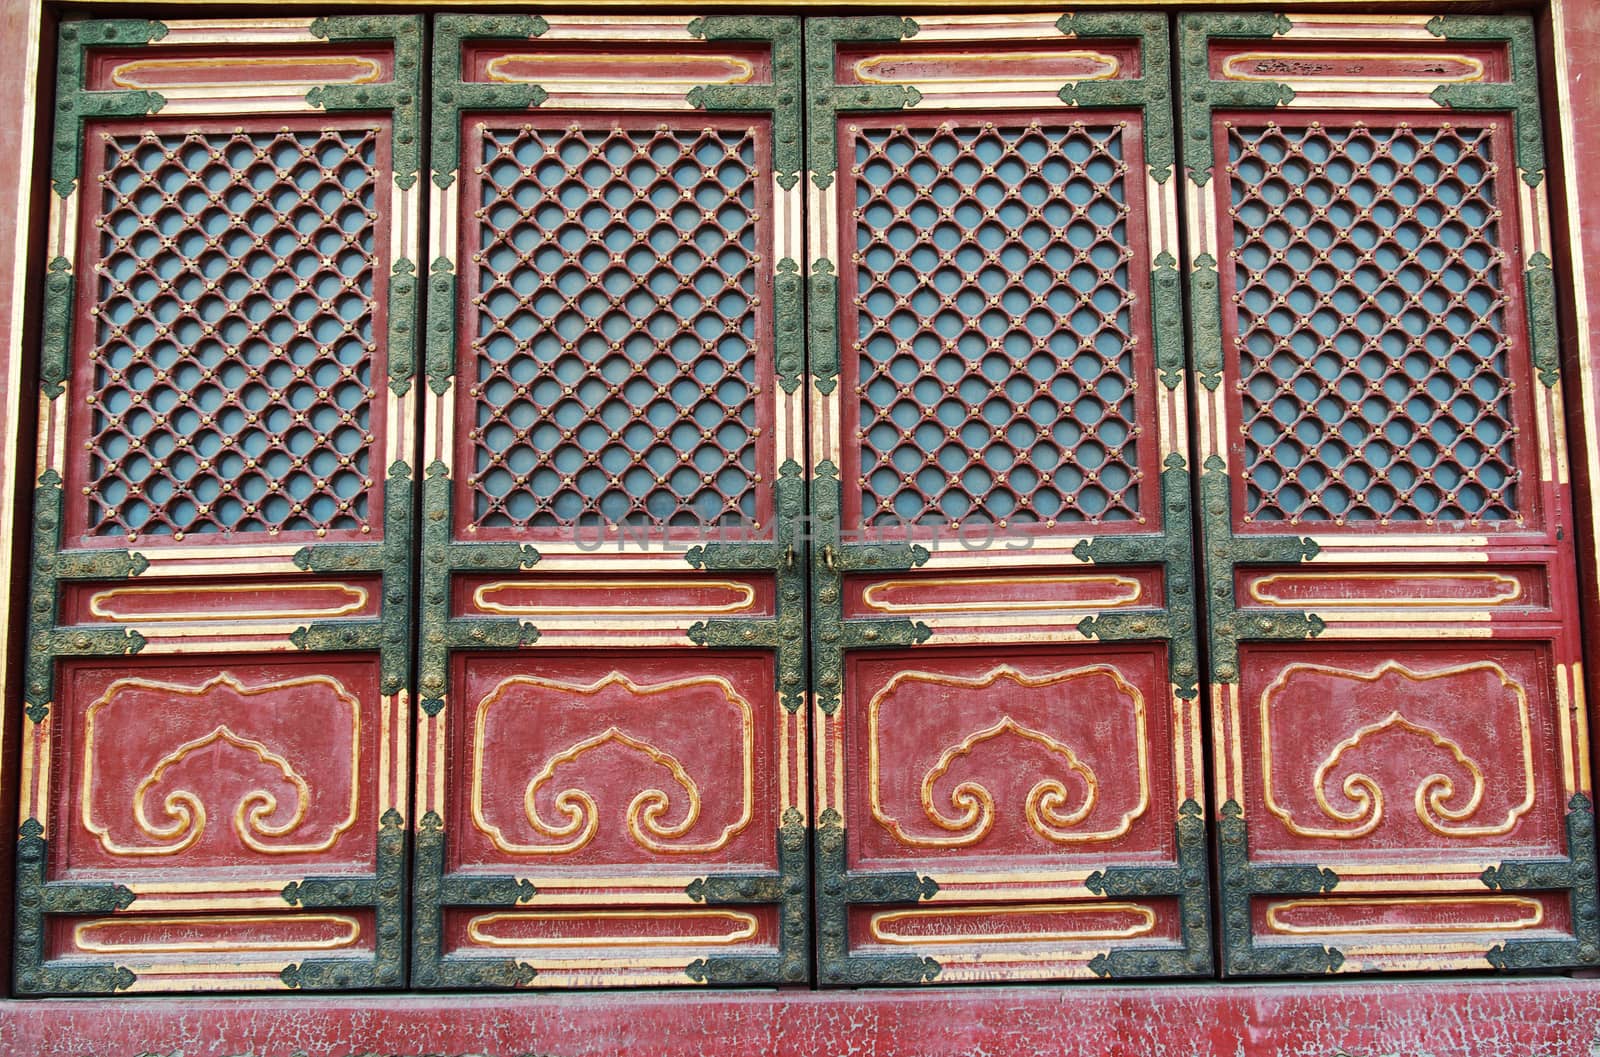 Doorway in historical architecture in Forbidden City in Beijing, China